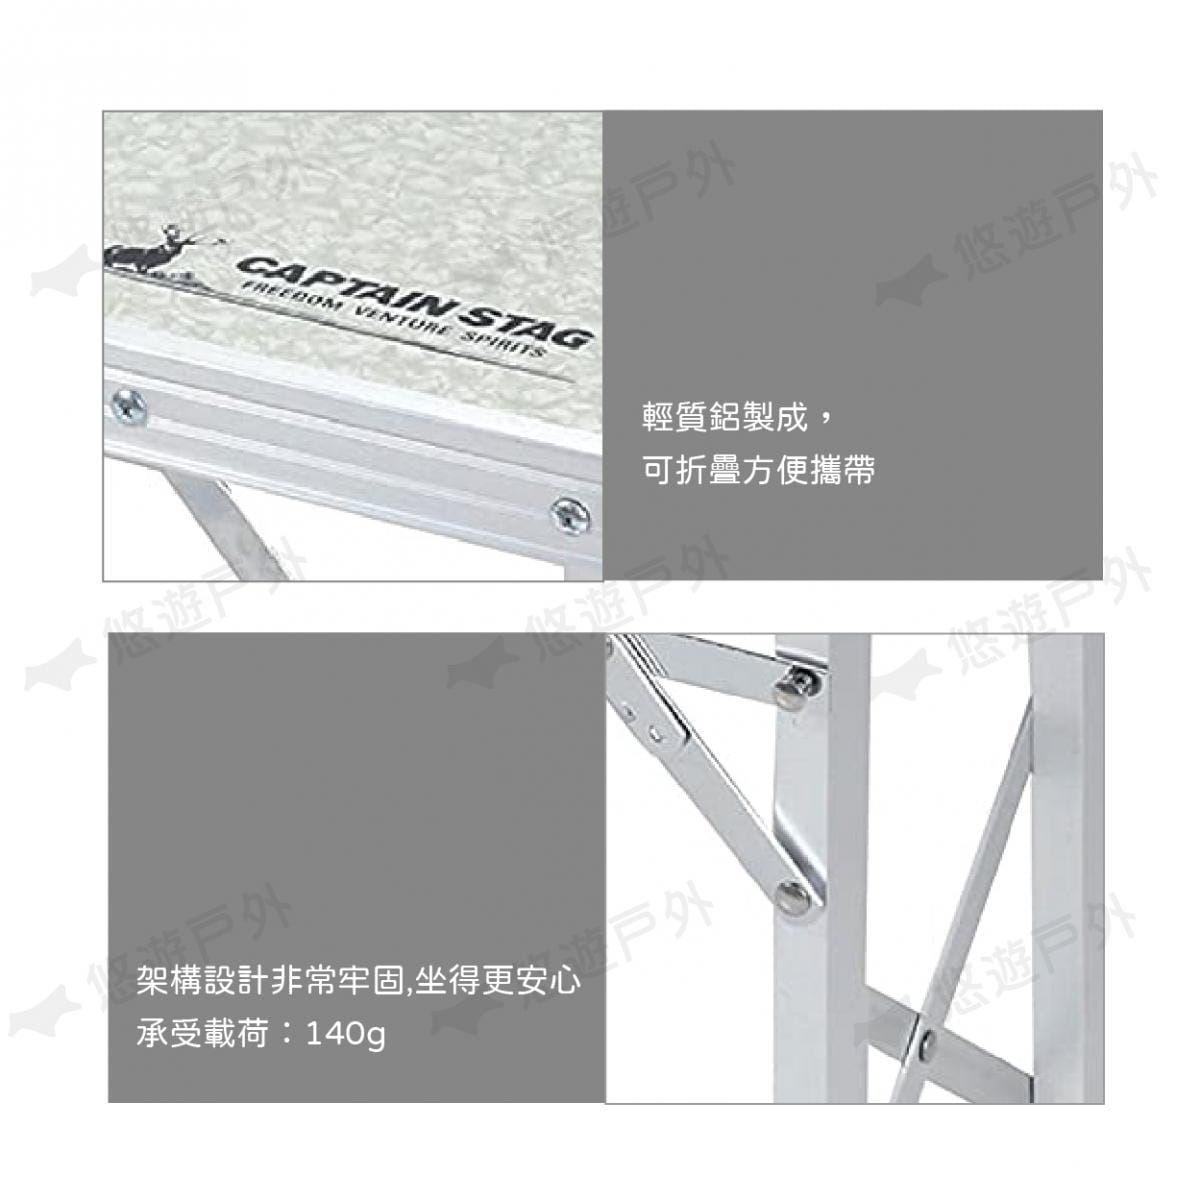 【日本鹿牌】 鋁製FD工作桌 UC-1604 摺疊 便攜椅 長凳 釣魚 居家 野餐 悠遊戶外 1